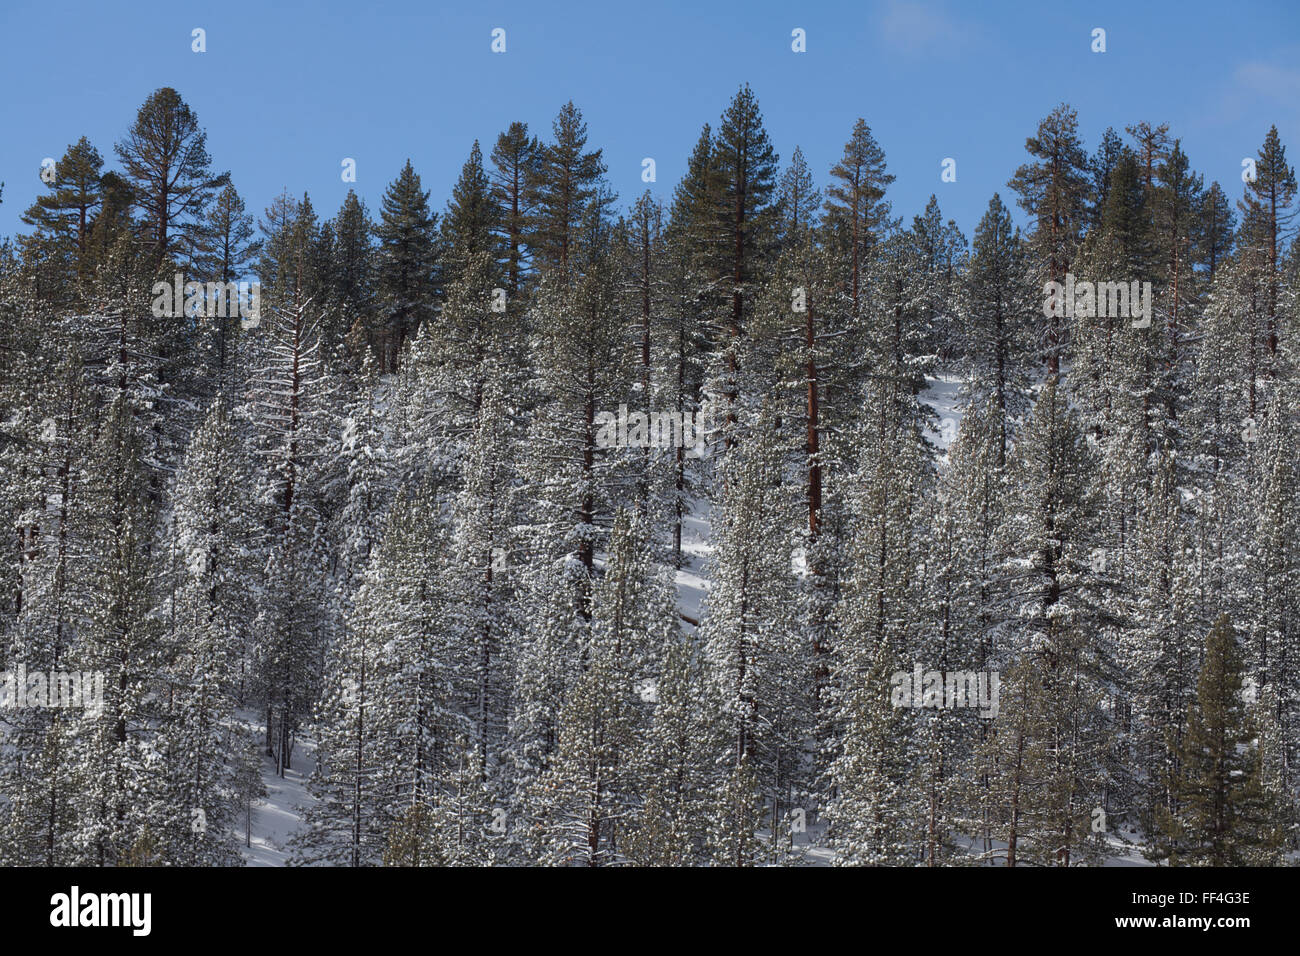 California Eastern Sierras in winter Stock Photo